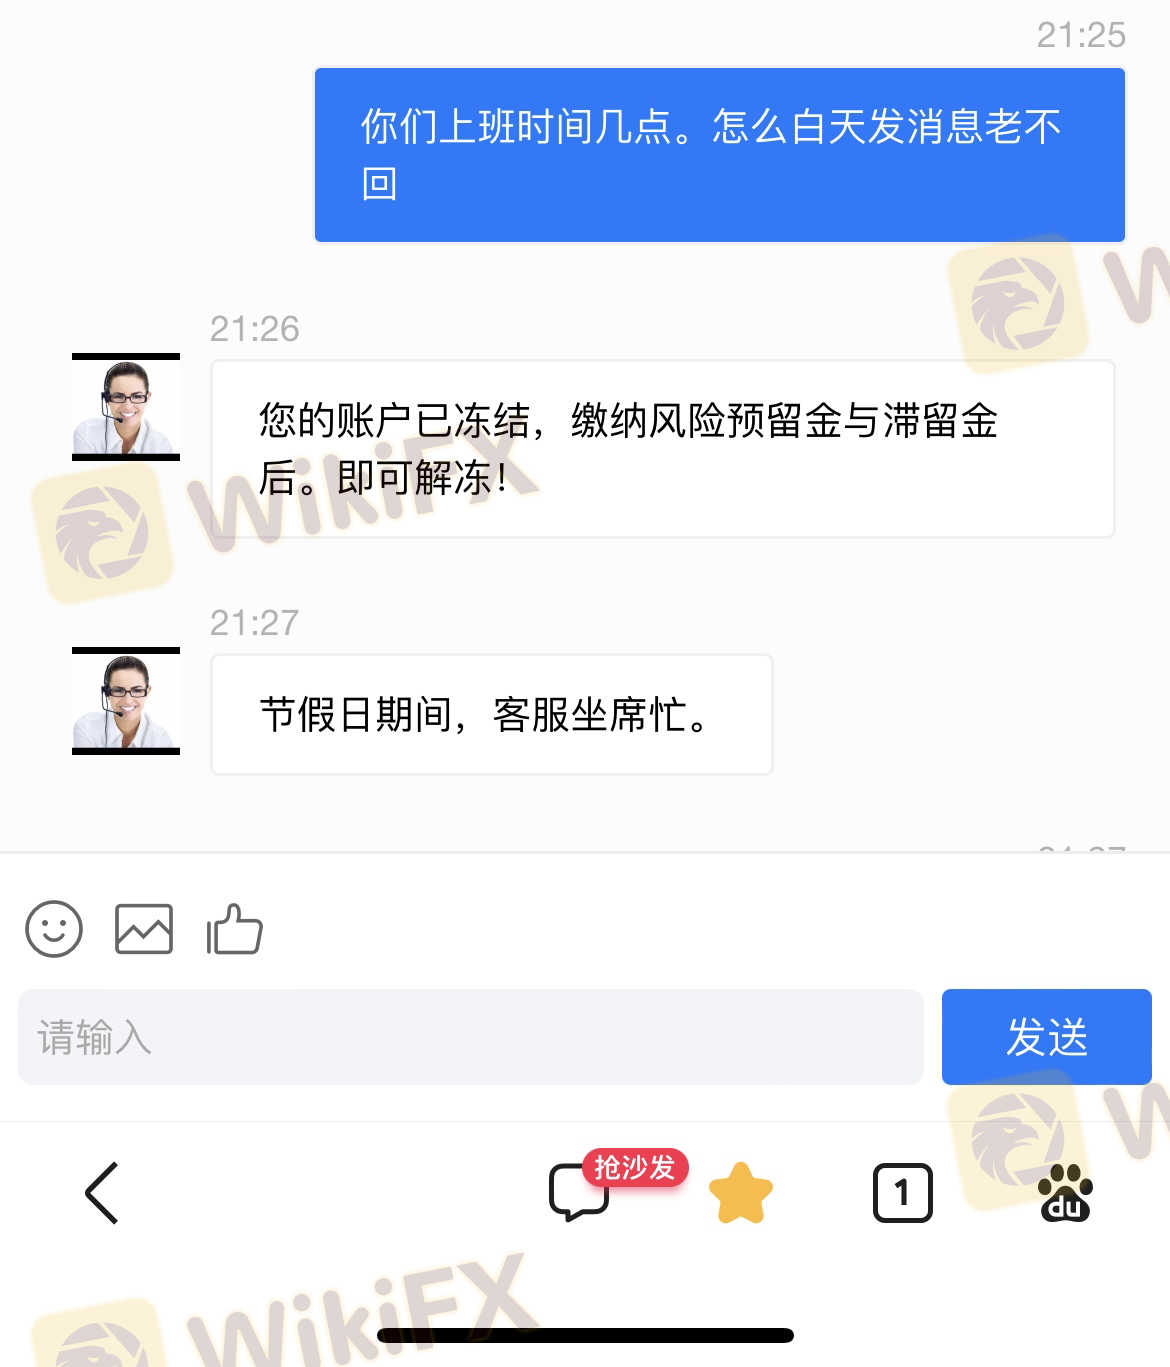 香港sce集团有限，这个app黑平台，我己被骗70万，希望大家不要上当受骗了。现在出不了金